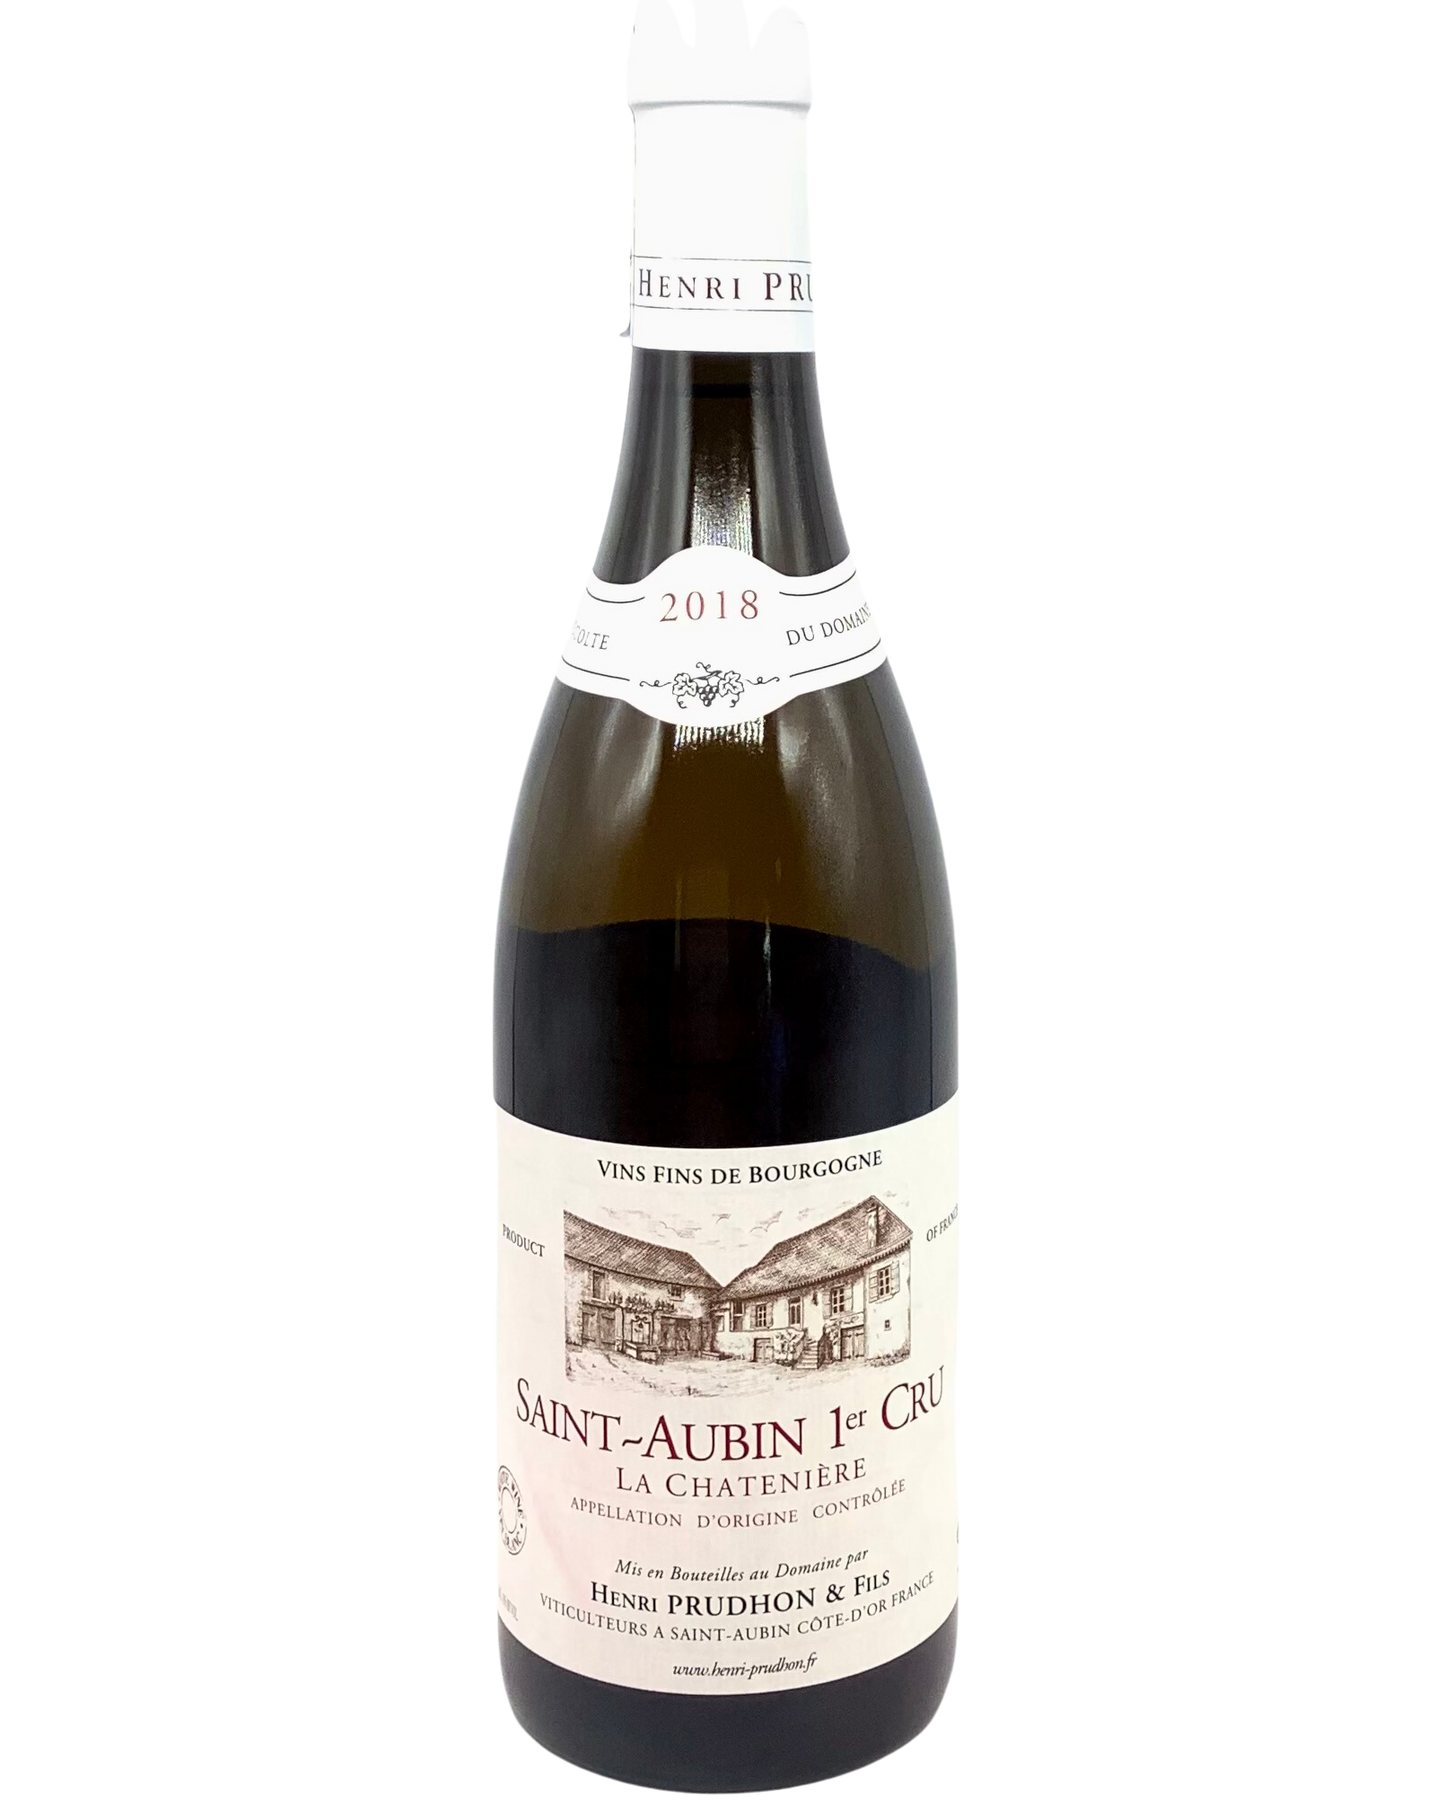 Henri Prudhon, Chardonnay, Saint-Aubin 1er Cru "La Chatenière" Côte de Beaune, Burgundy, France 2018